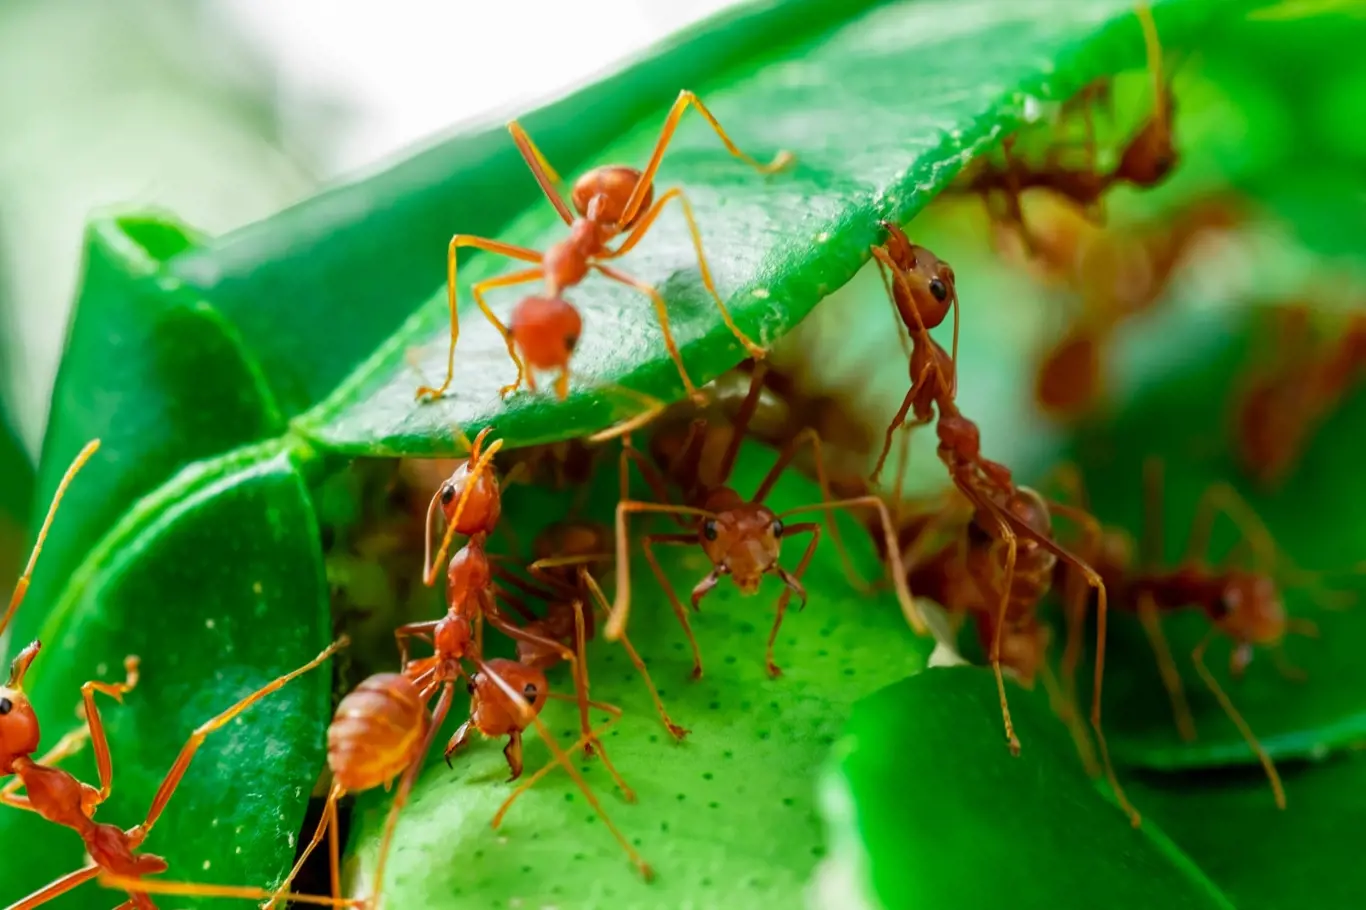 Mravenci mají na zahradě své místo, ale bohužel dokážou i značně uškodit.